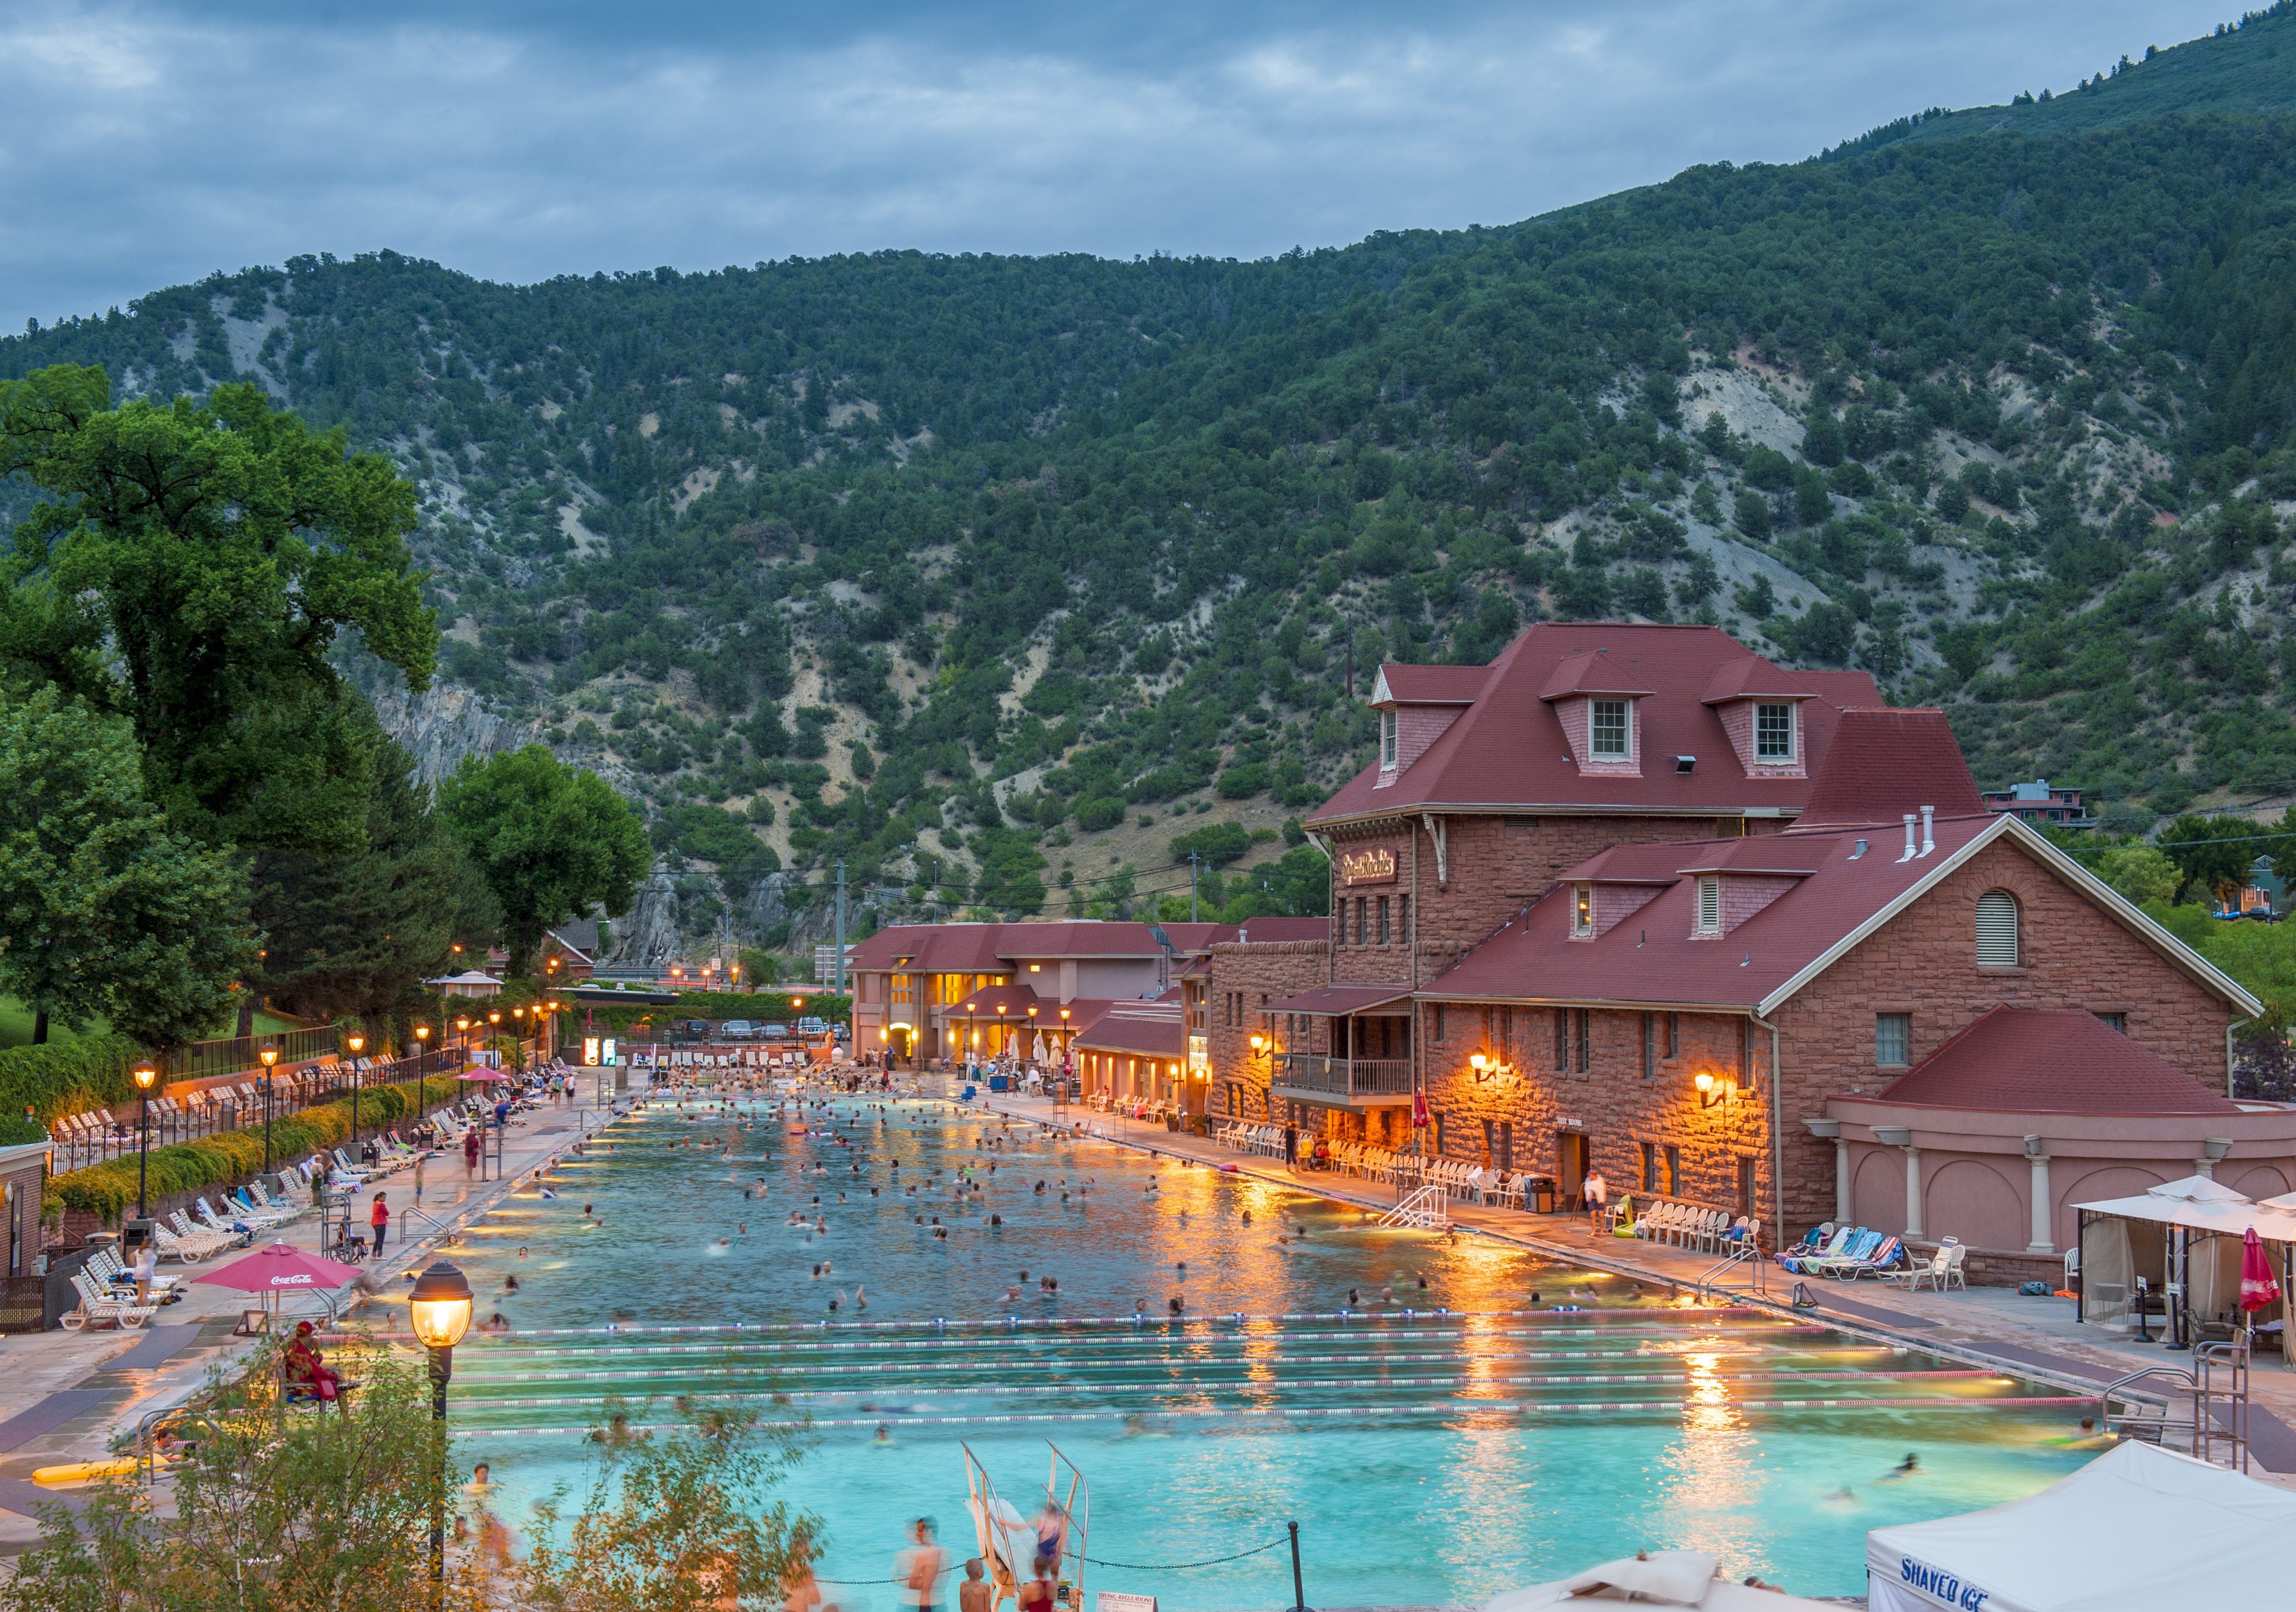 Glenwood Hot Springs Resort – Glenwood Springs, Colorado